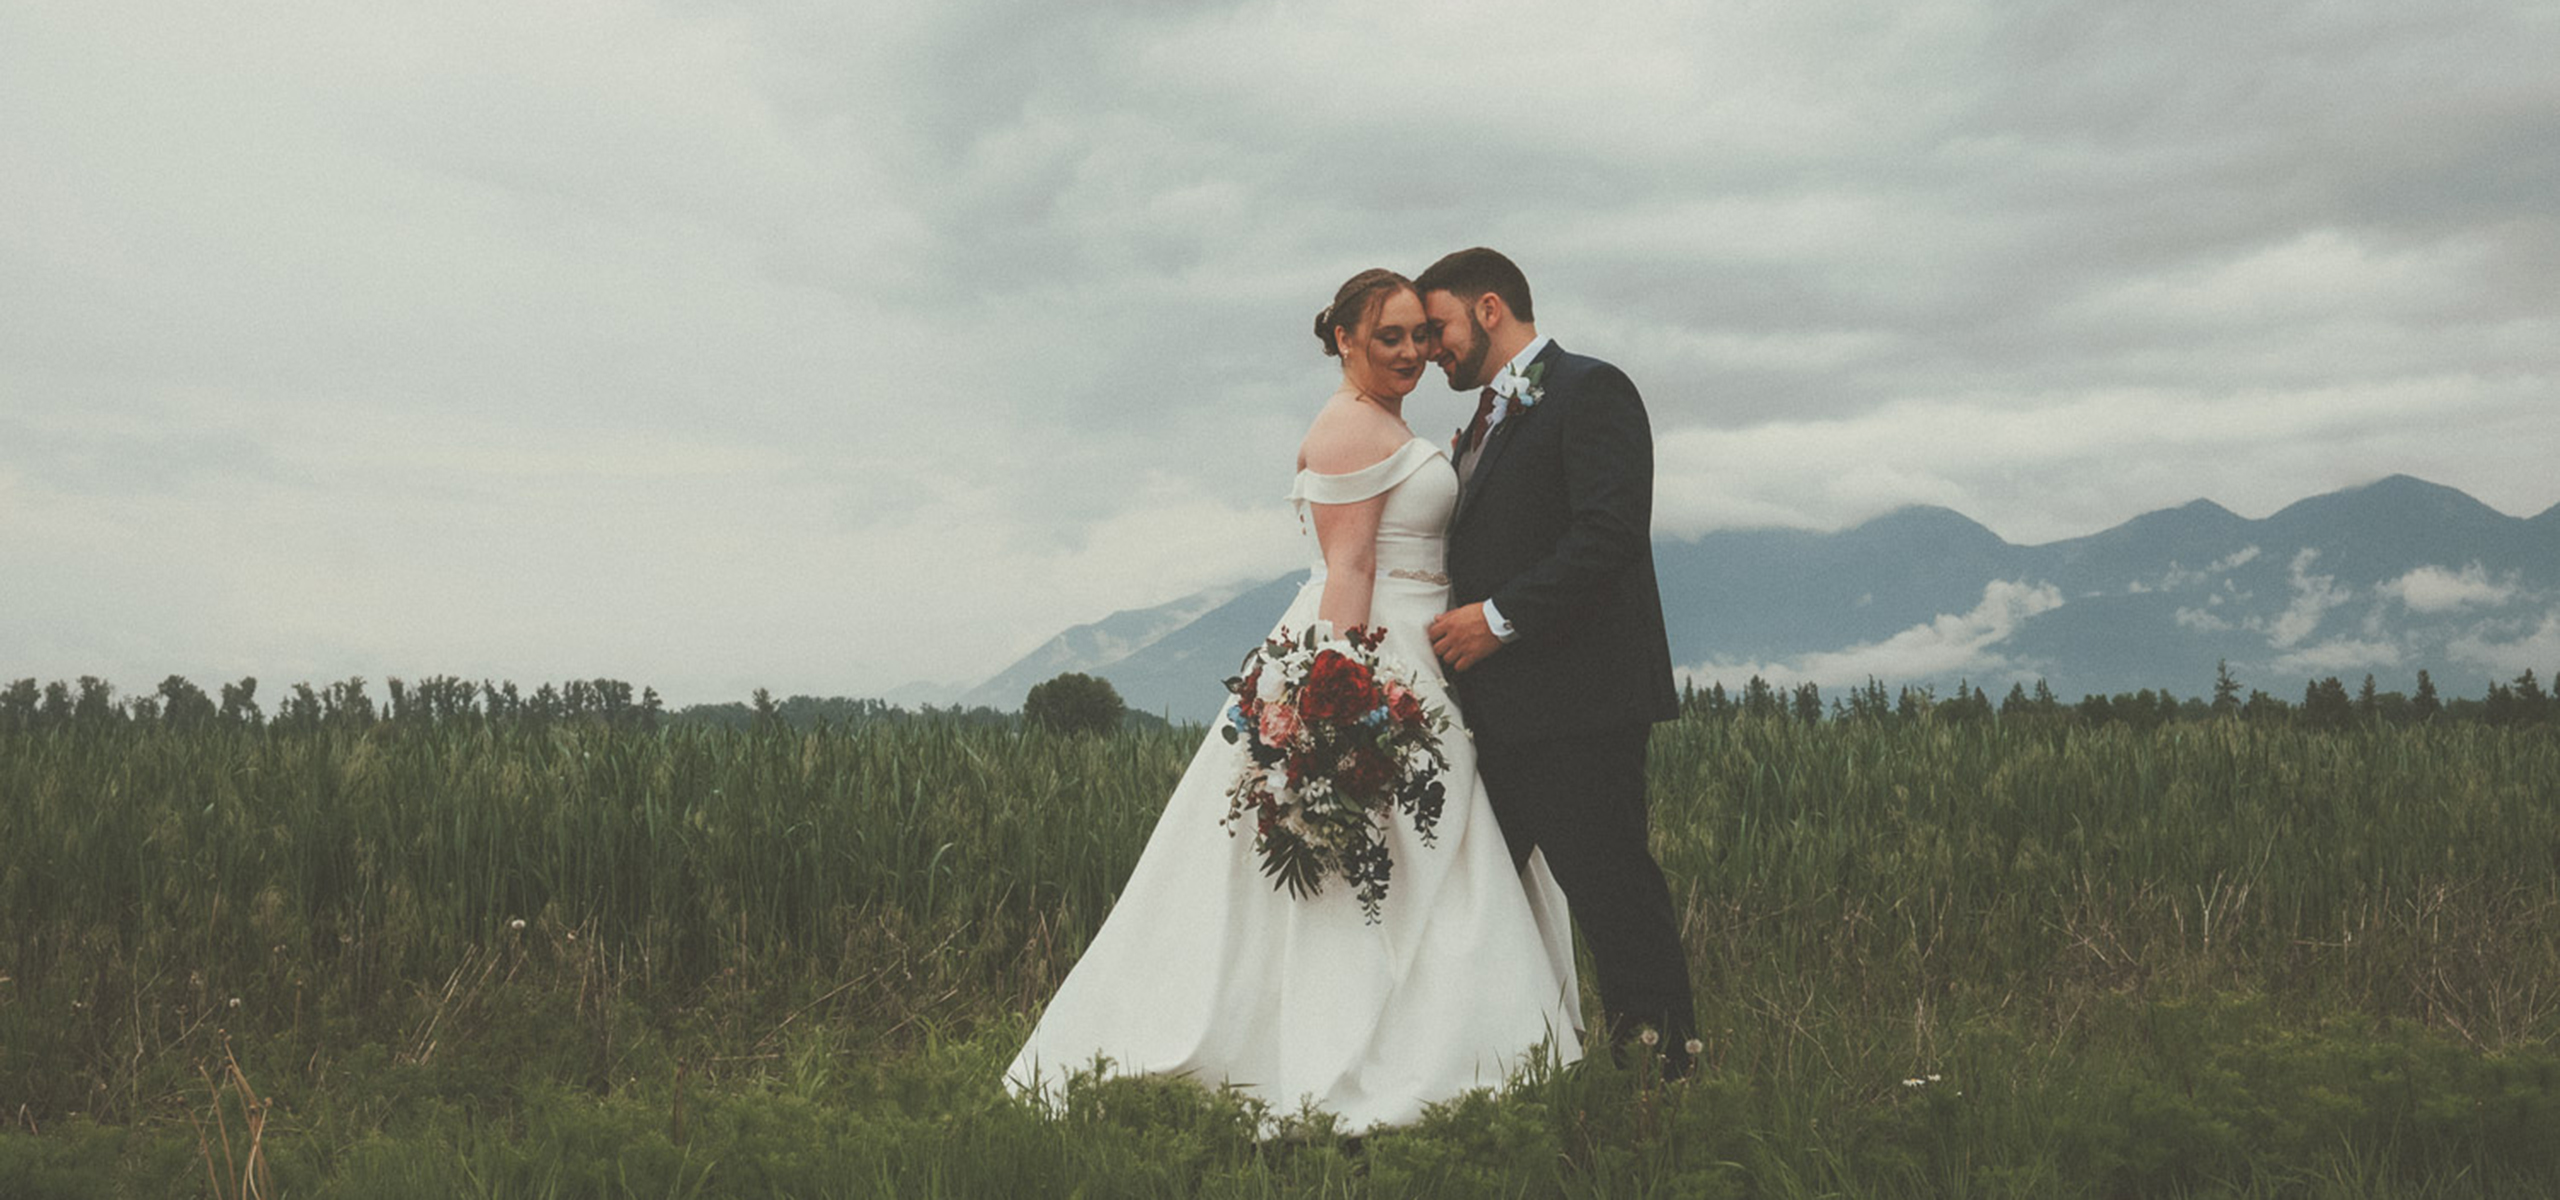 Estes Park Colorado Rocky Mountain National Park Wedding Elopement Photography